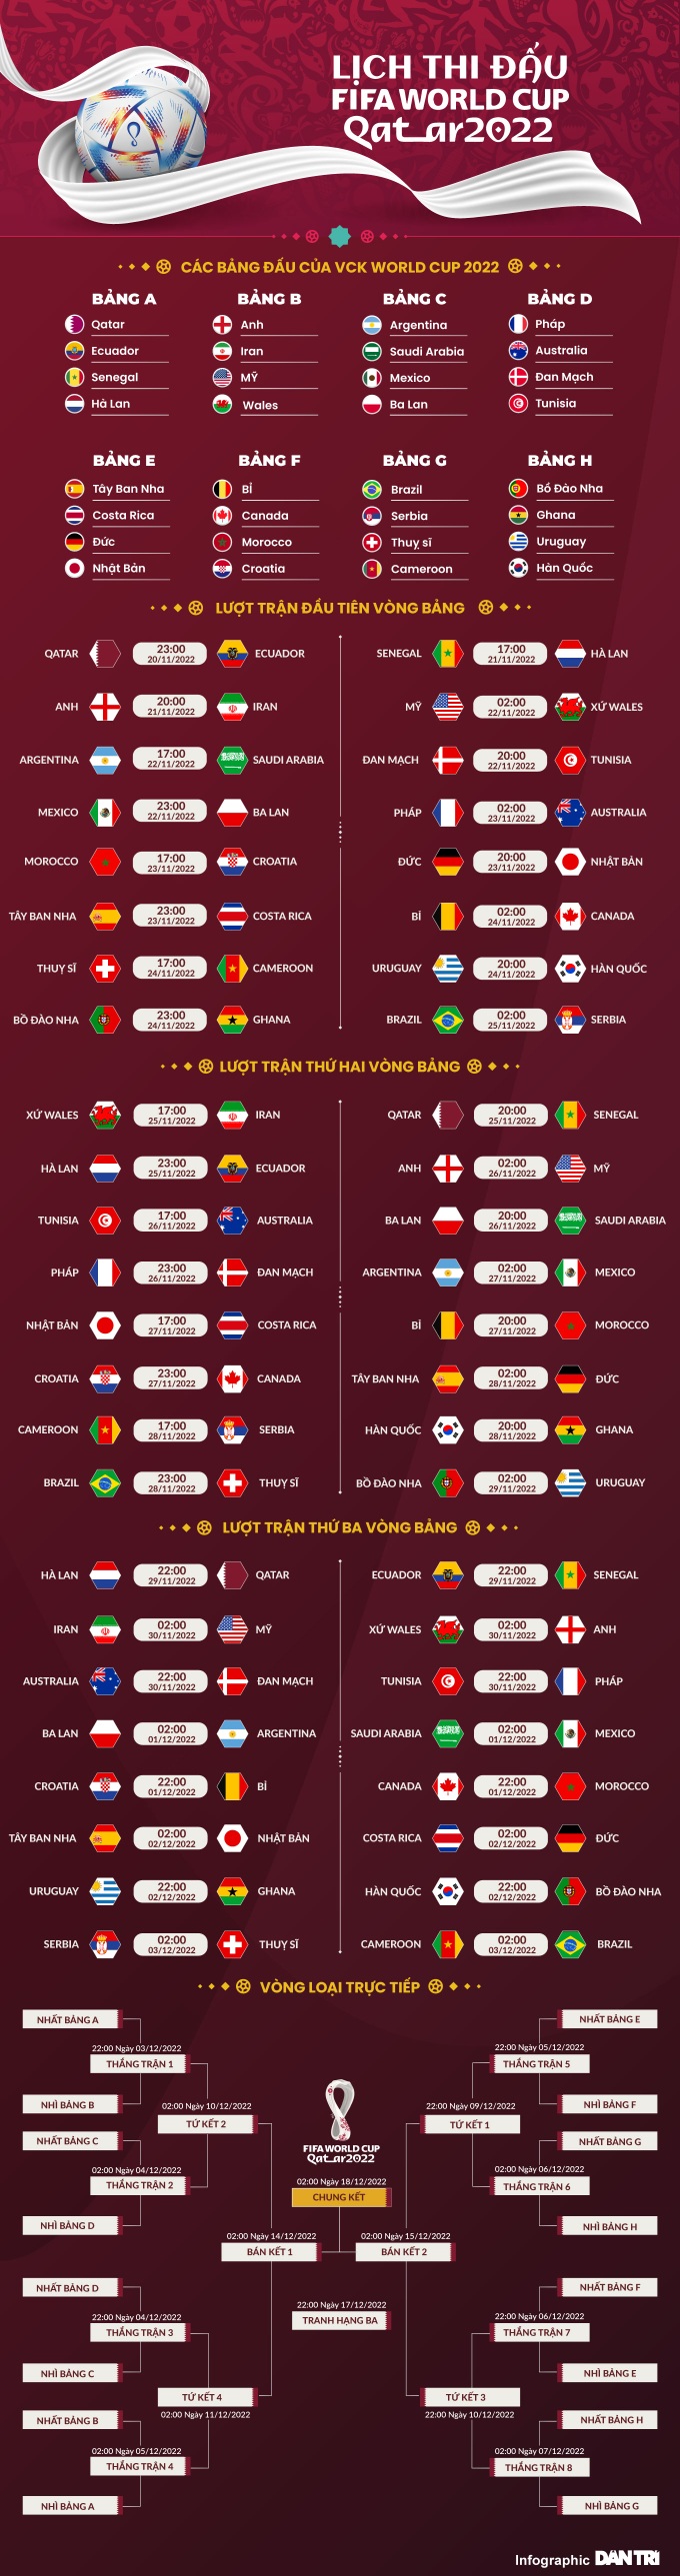 Đội tuyển Anh sở hữu đội hình đắt giá nhất World Cup 2022 - 5